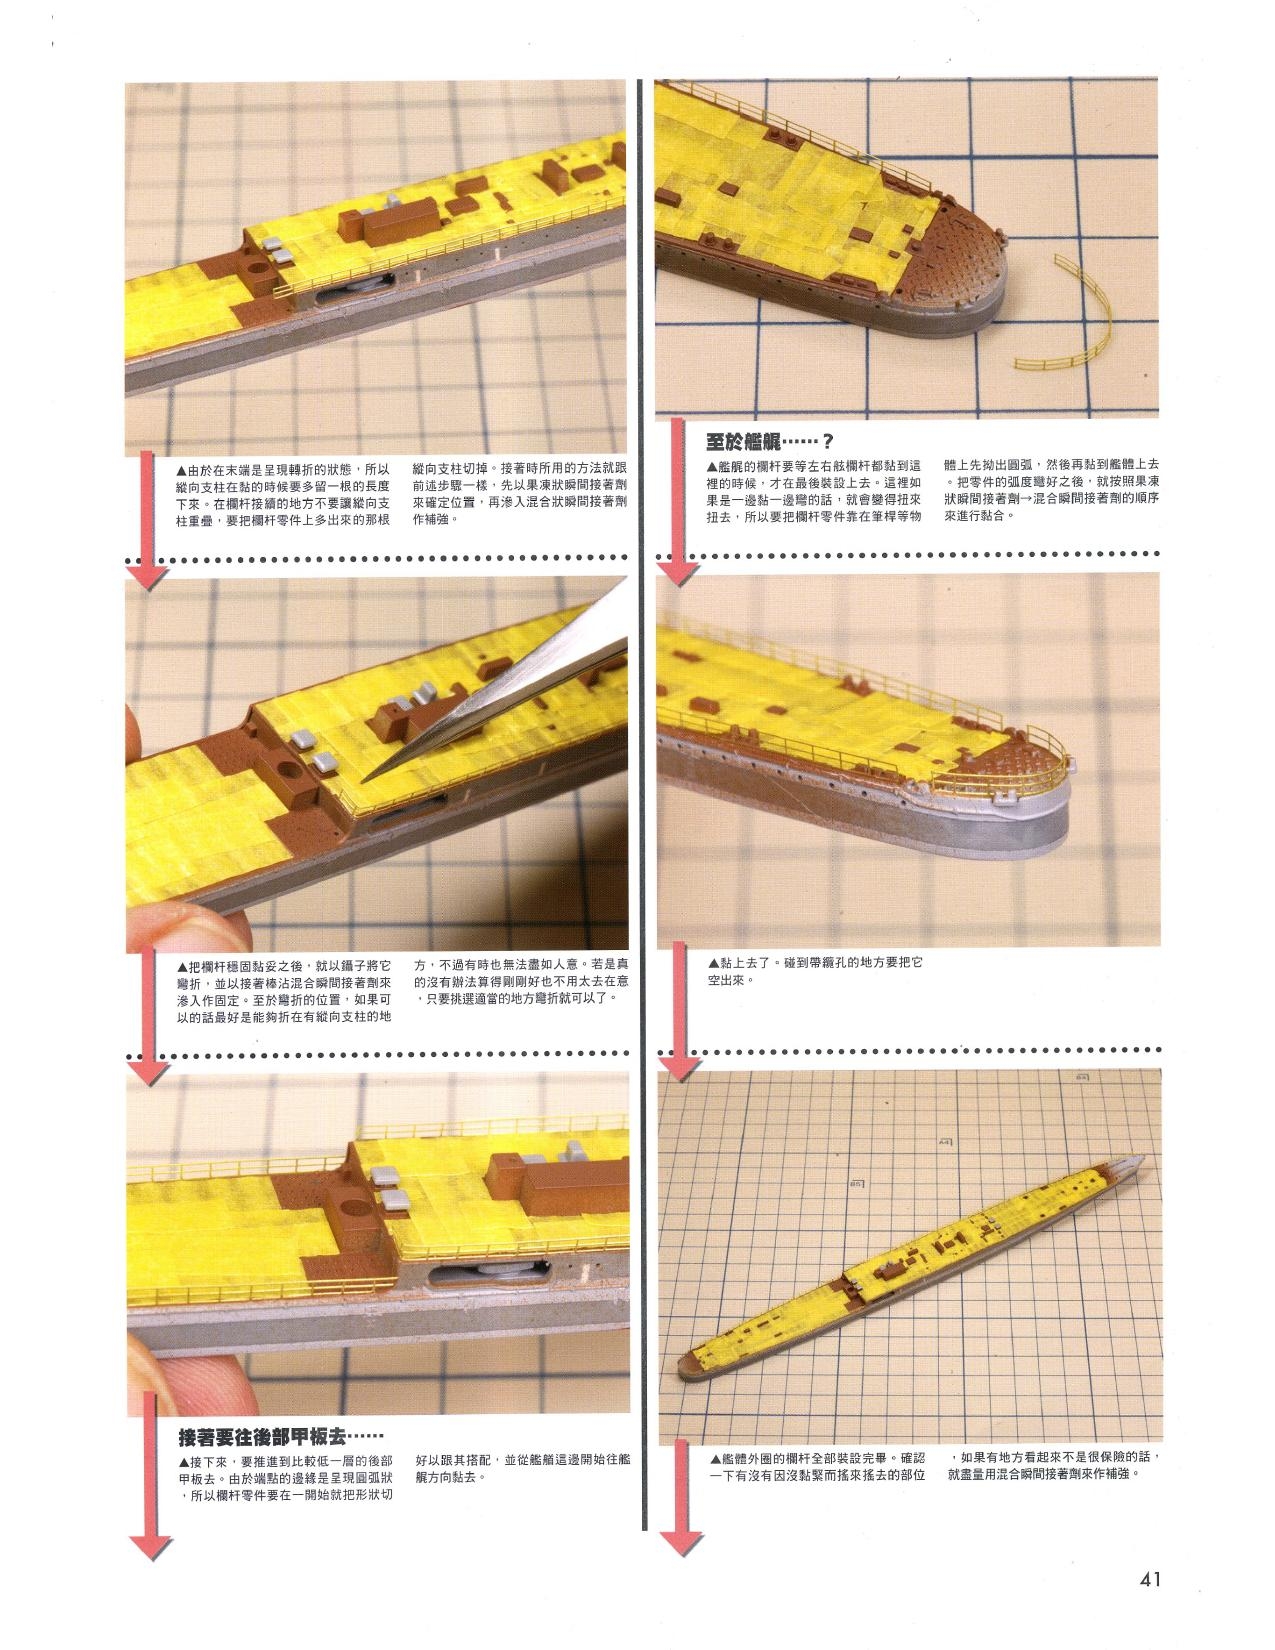 1/700 军舰模型制作实例Vol.03[CN] 41